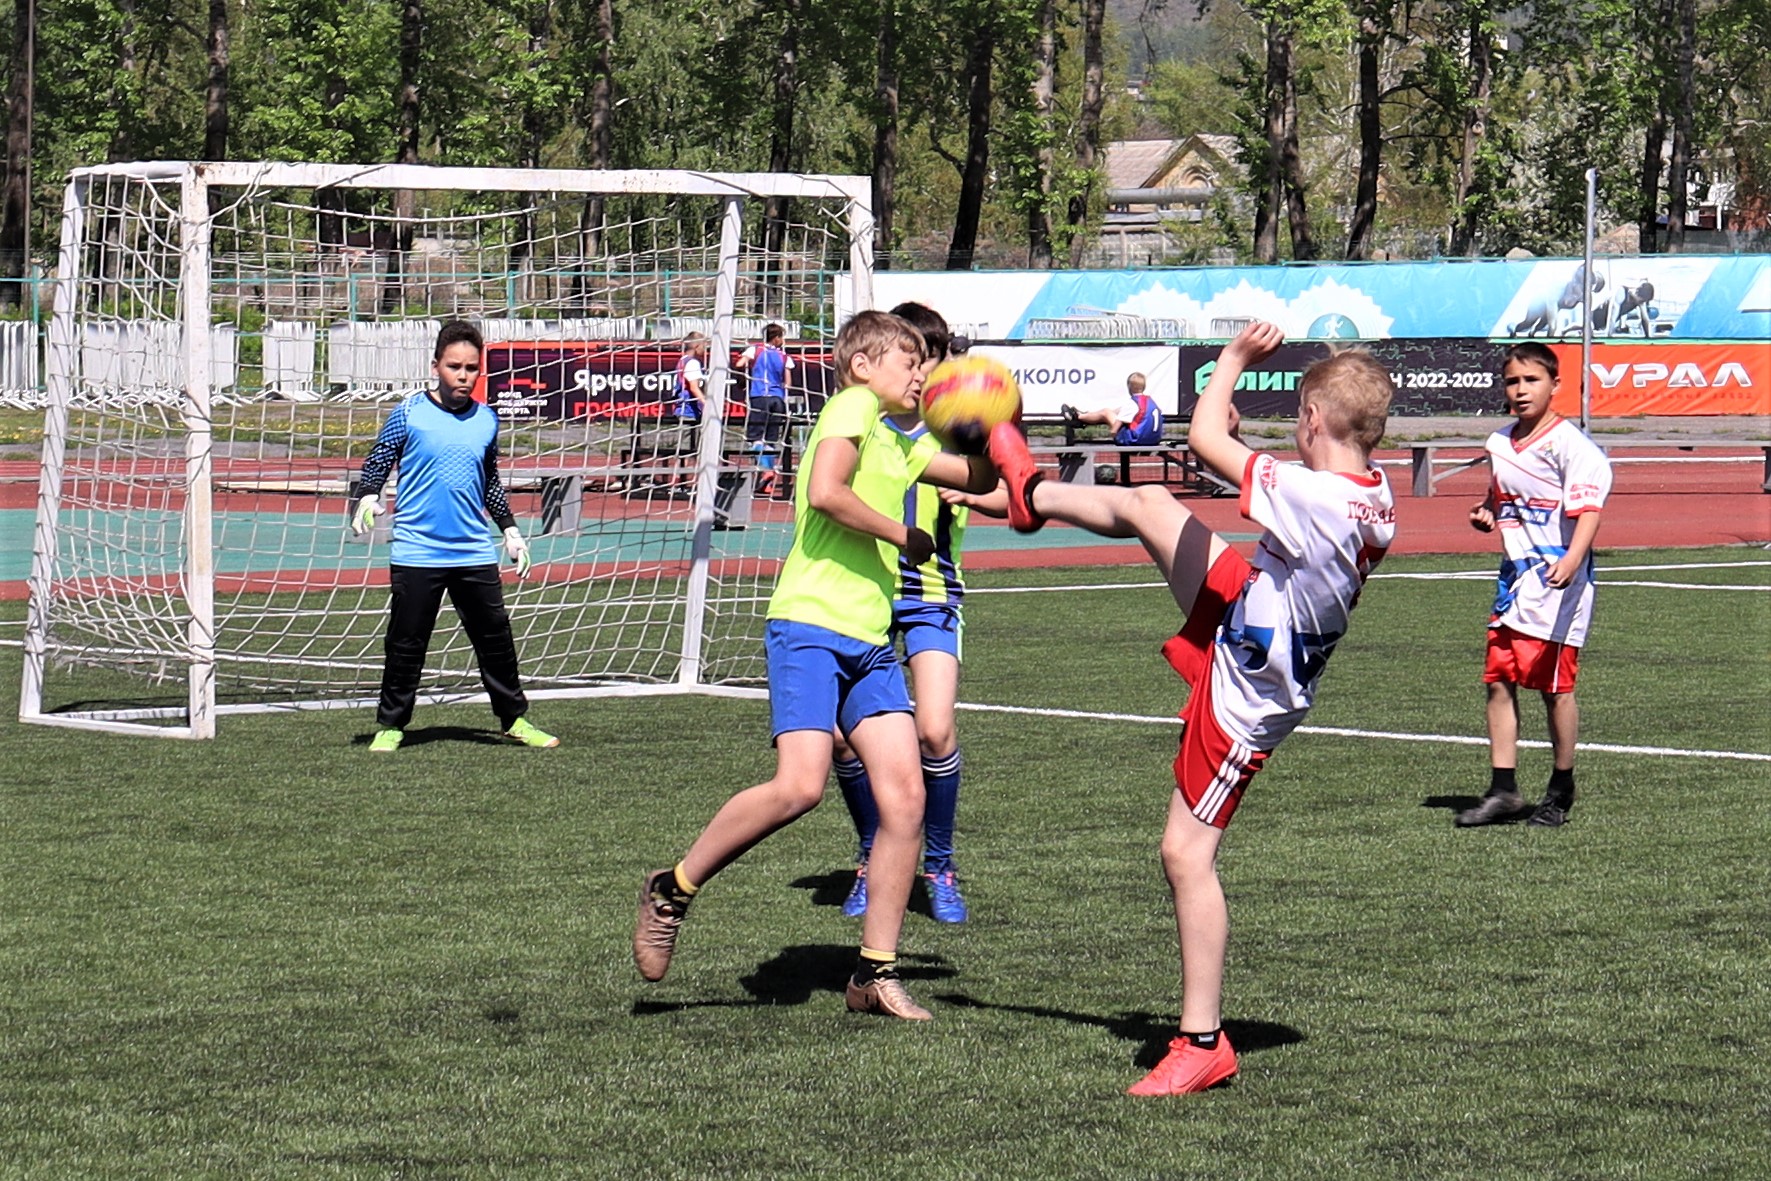 Детский футбольный фестиваль «Локобол» открыл сезон в Миассе